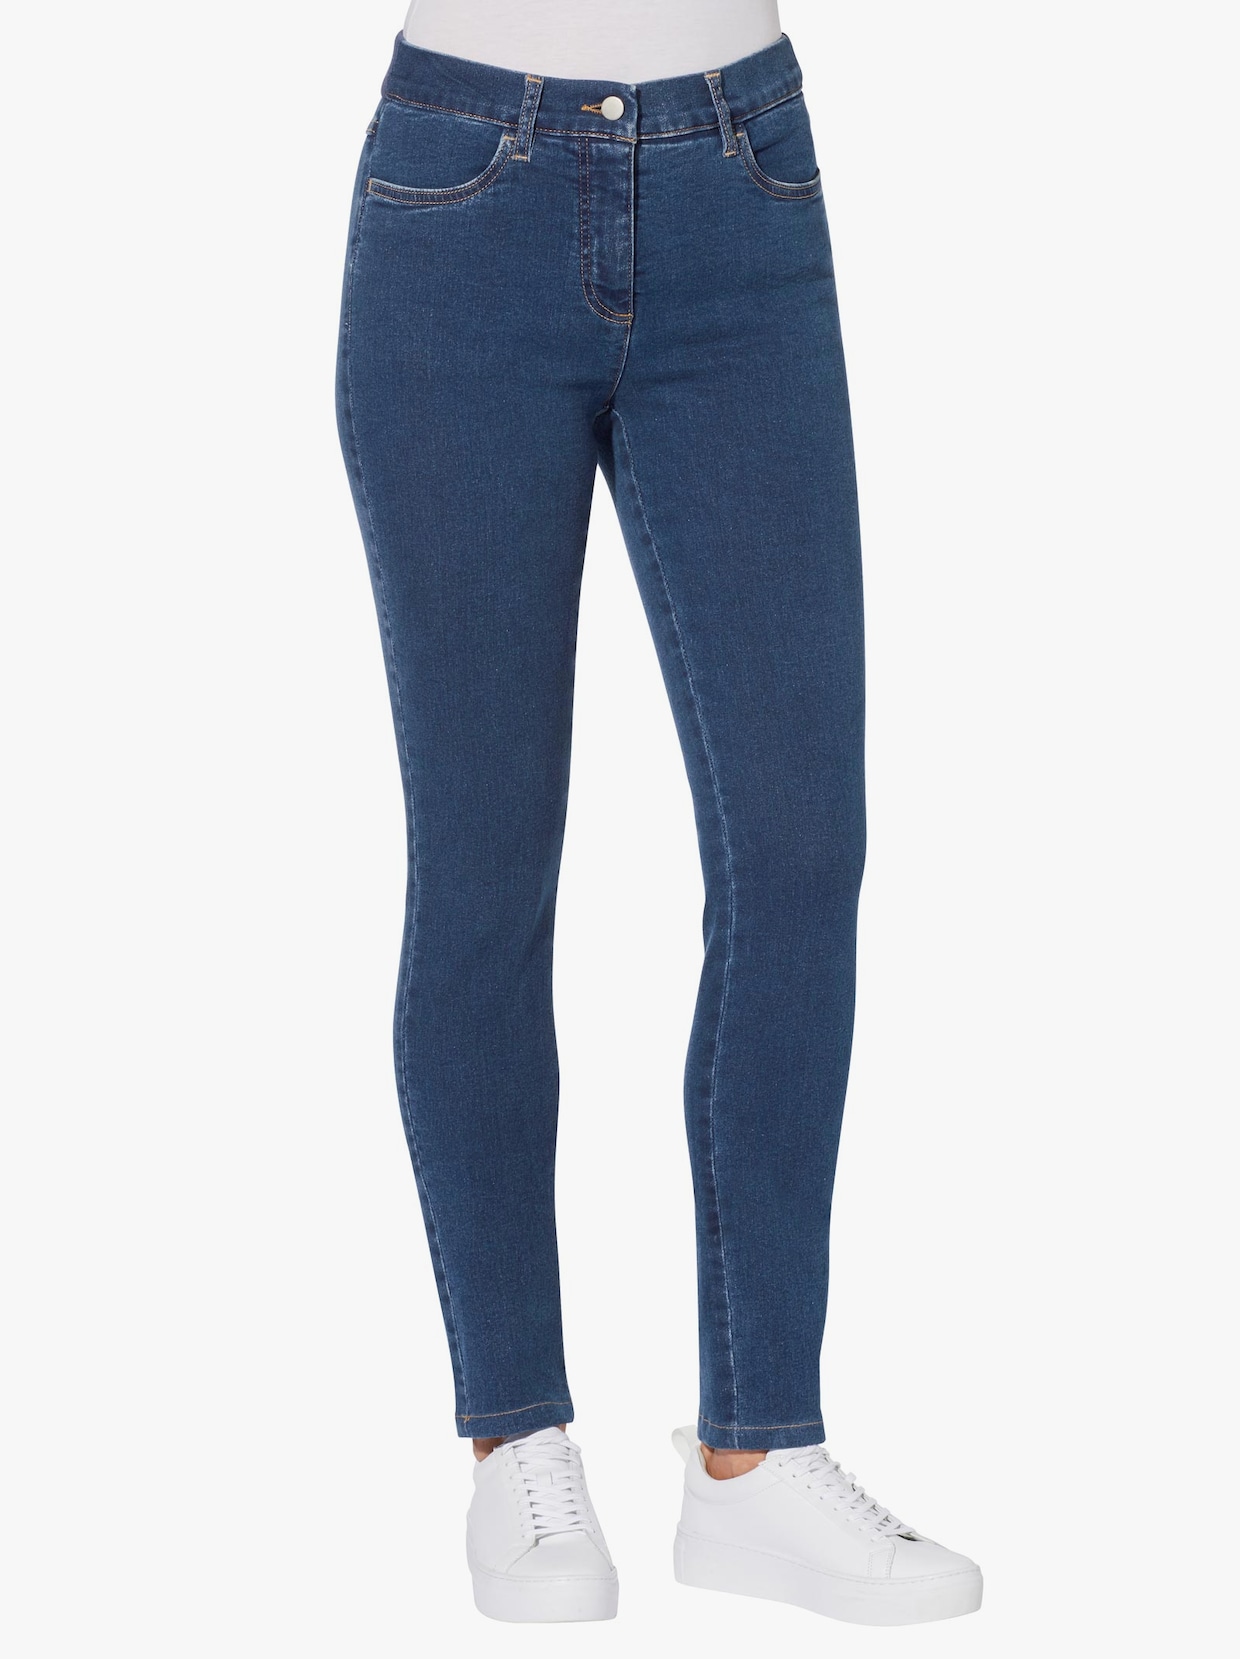 Jeans - blue-stonewashed